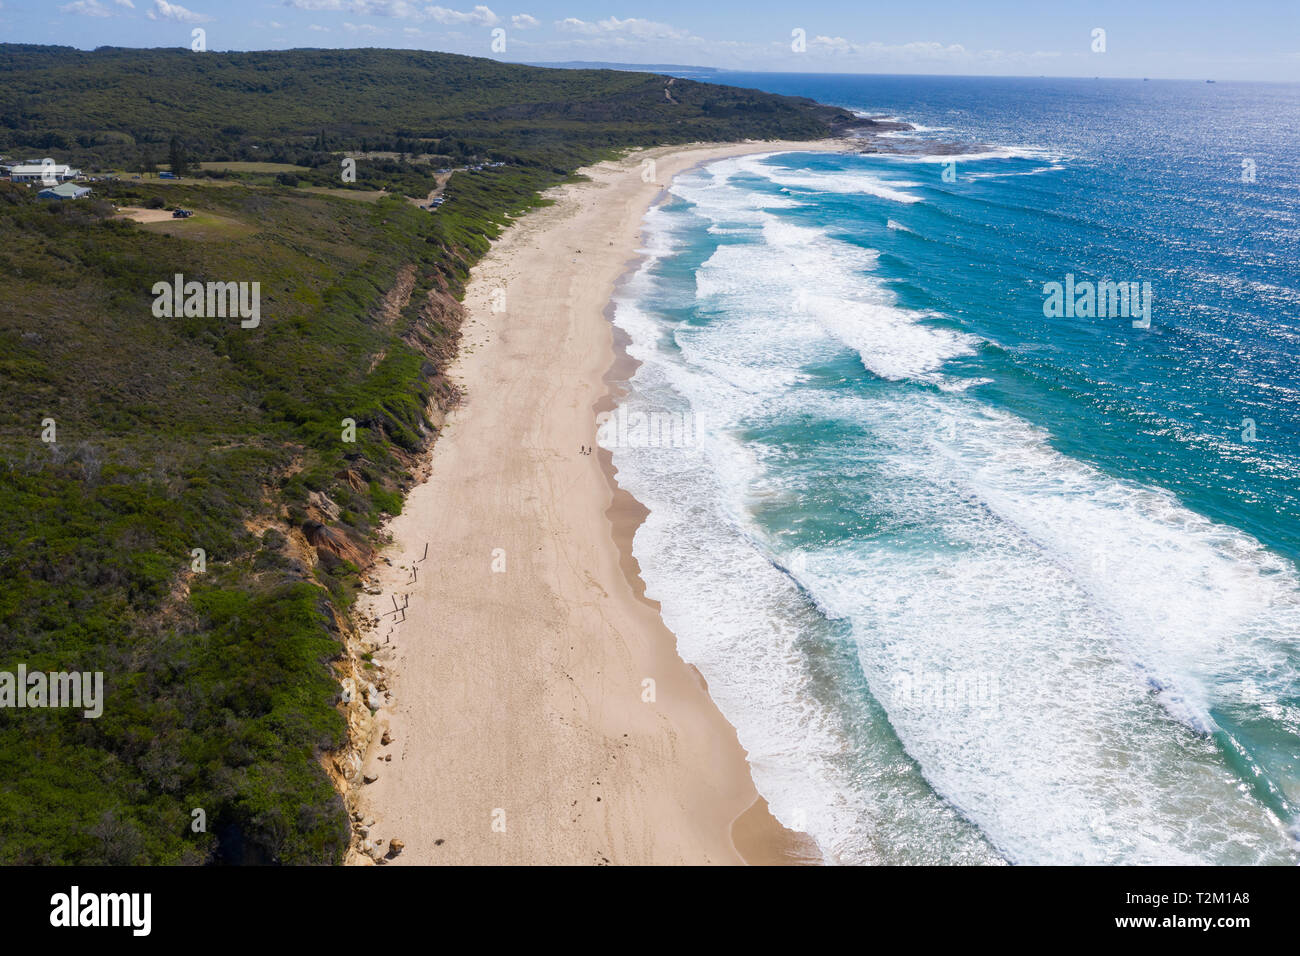 Vista aerea di Catherine Hill Bay - guardando a Nord. Questa zona sulla costa centrale del NSW ha alcune fantastiche vedute costiere. Foto Stock